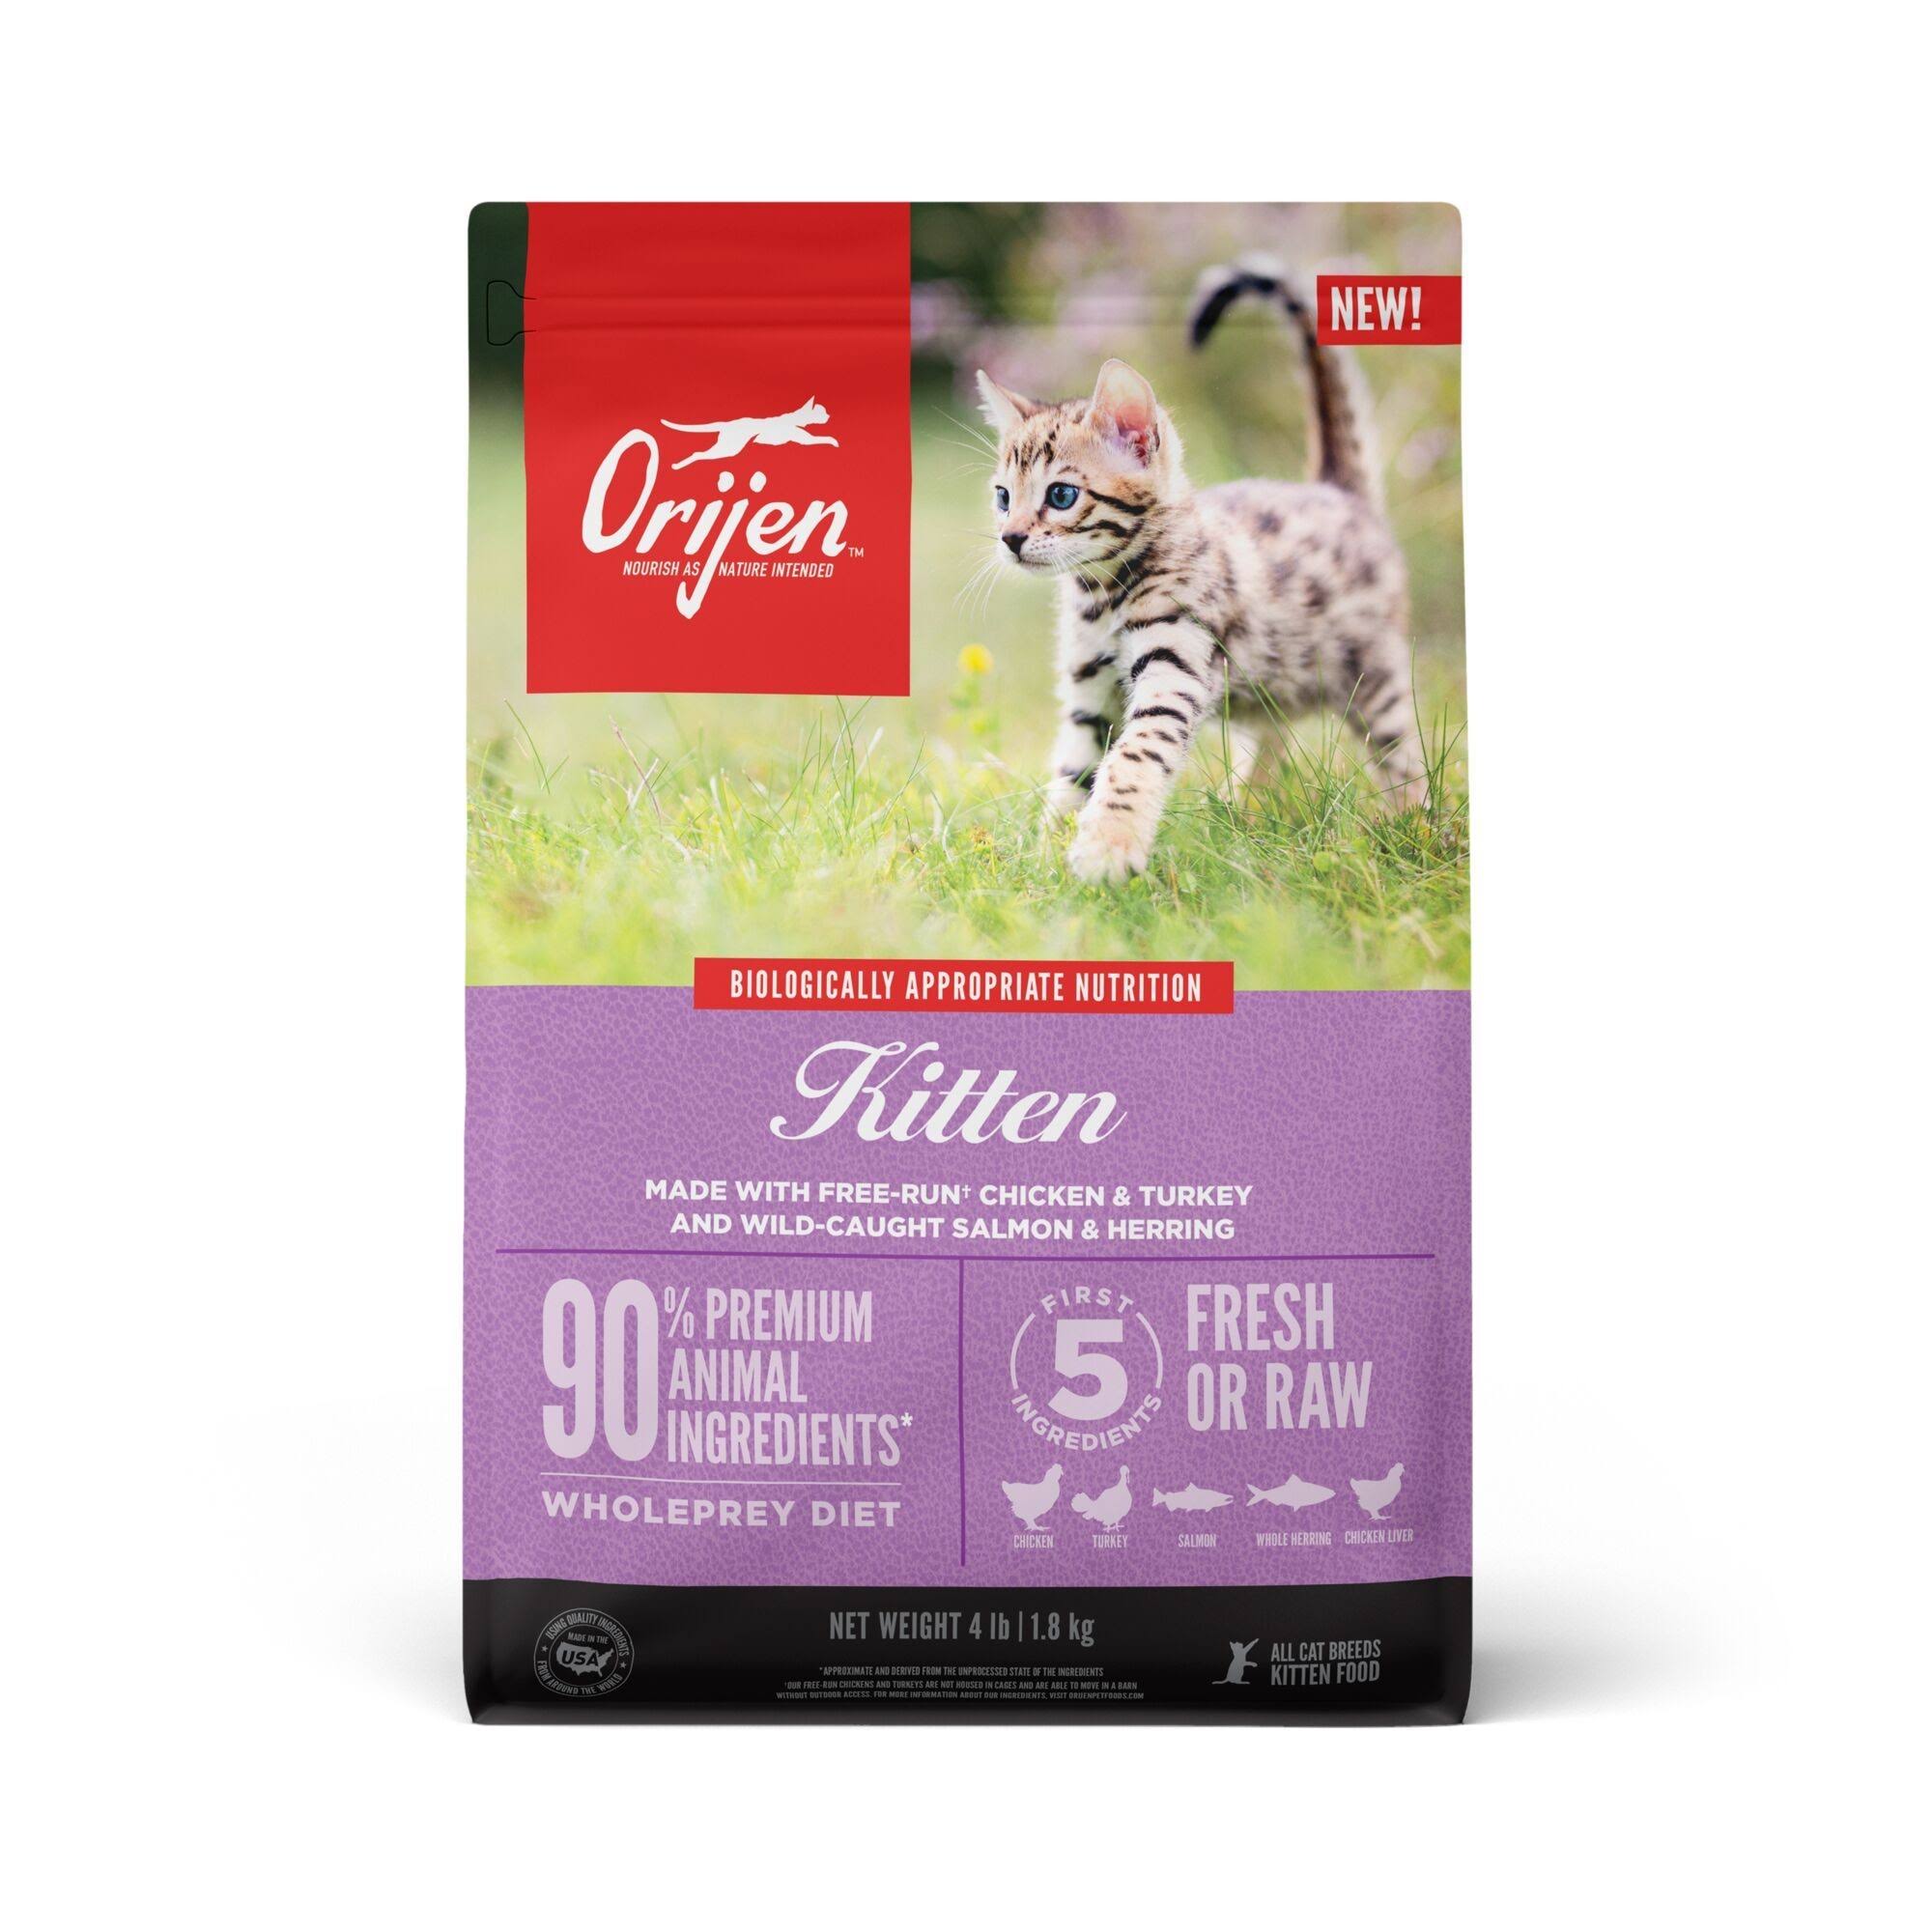 Orijen Grain-Free Kitten Food 4 LB